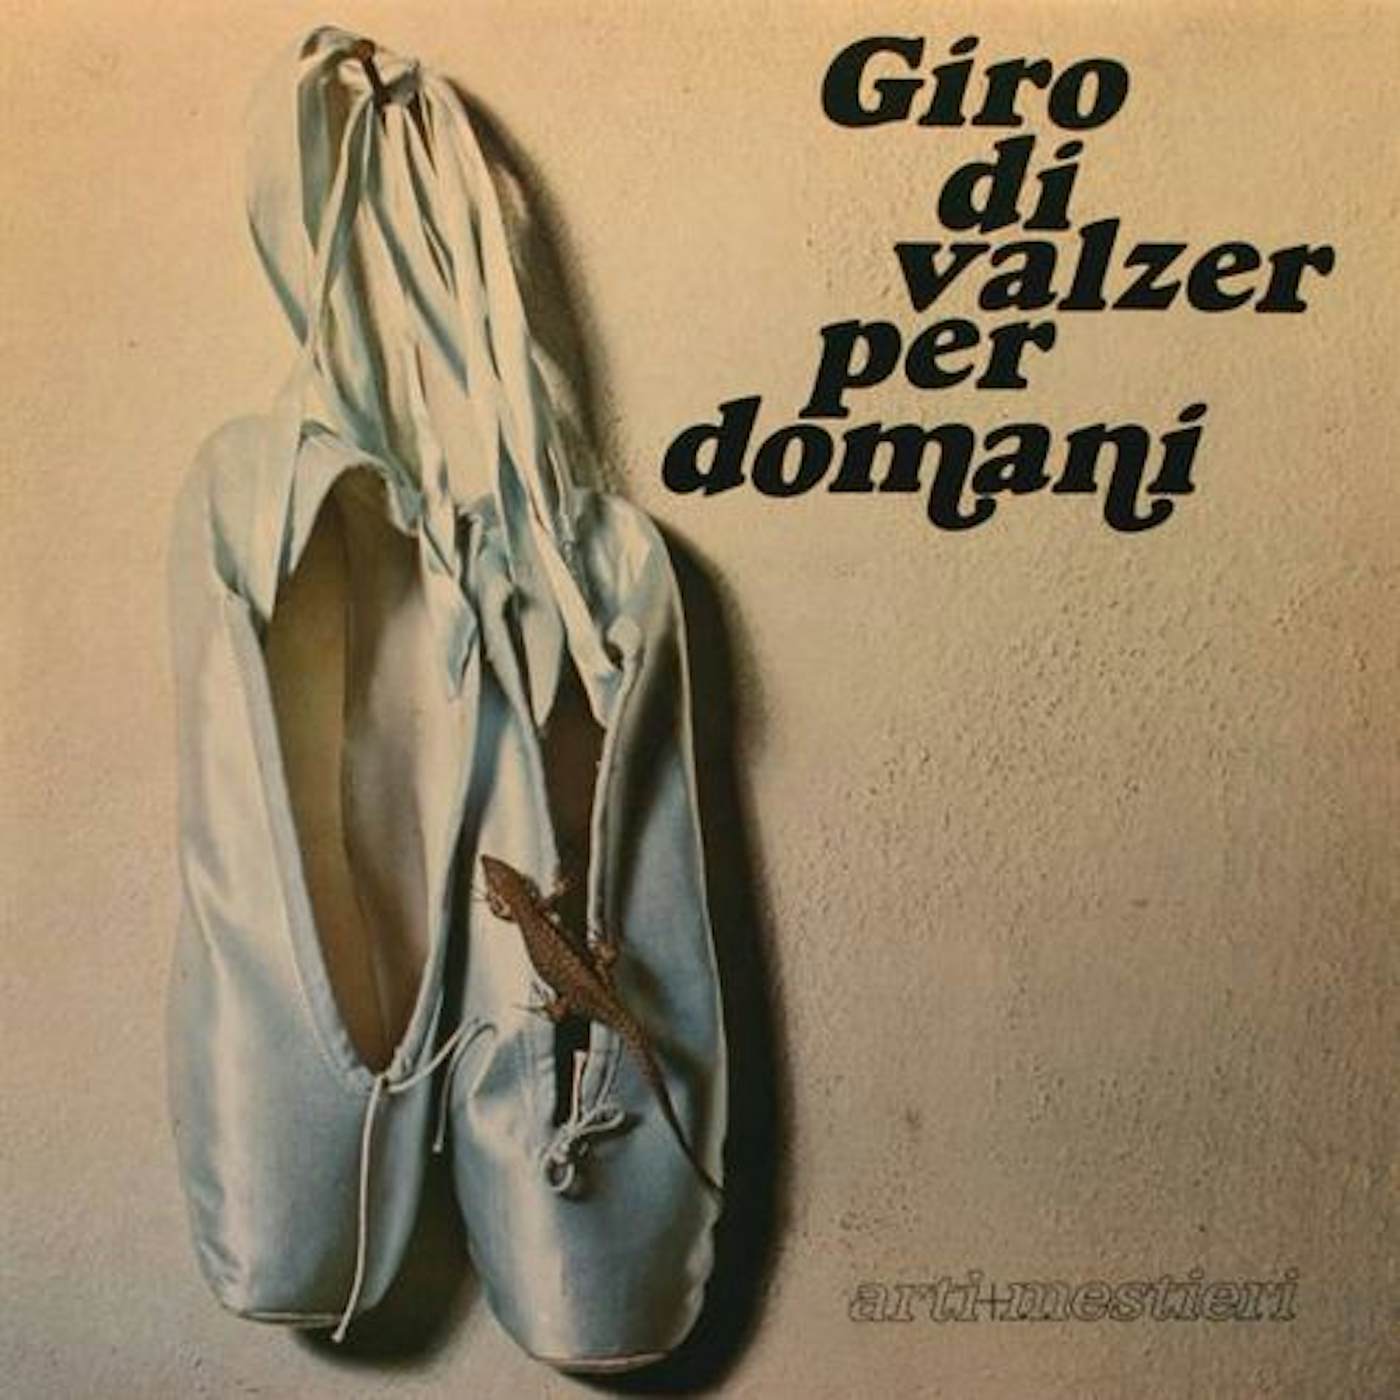 Arti & Mestieri Giro di valzer per domani Vinyl Record